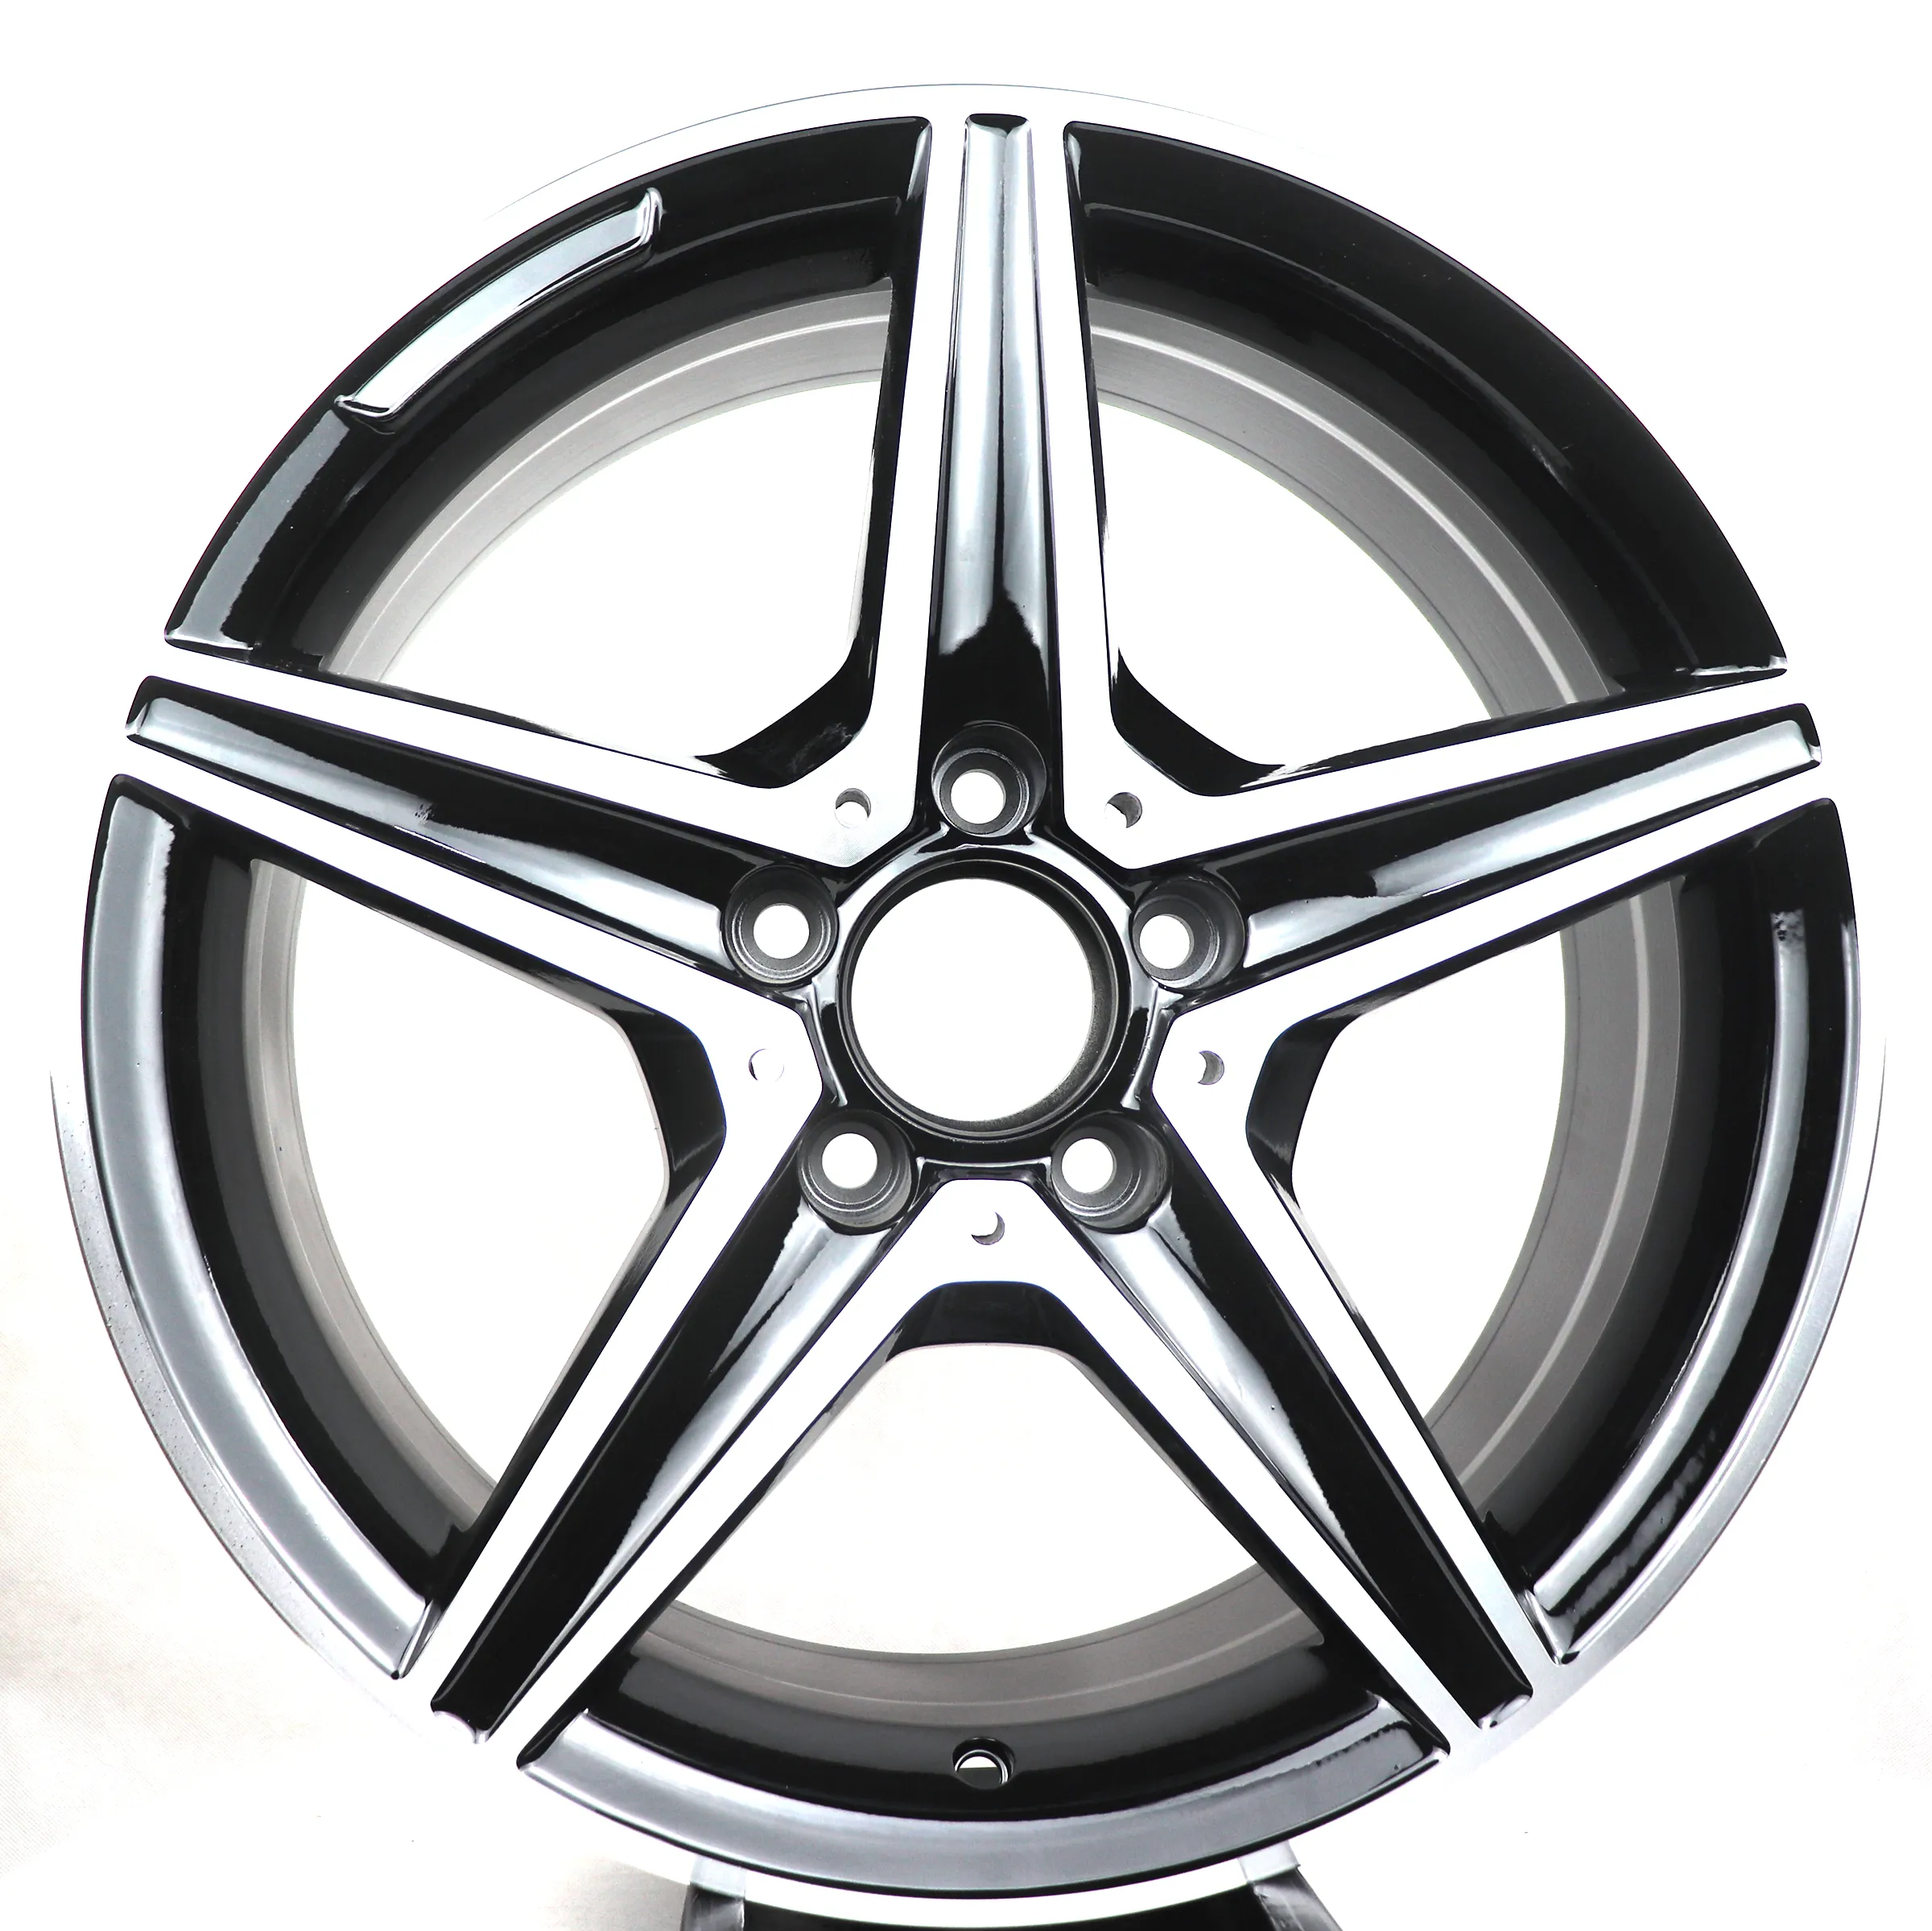 Лидер продаж, оригинальные реплики колес на заказ, 17-24 дюйма, 5x112, колесные диски из сплава для Benz